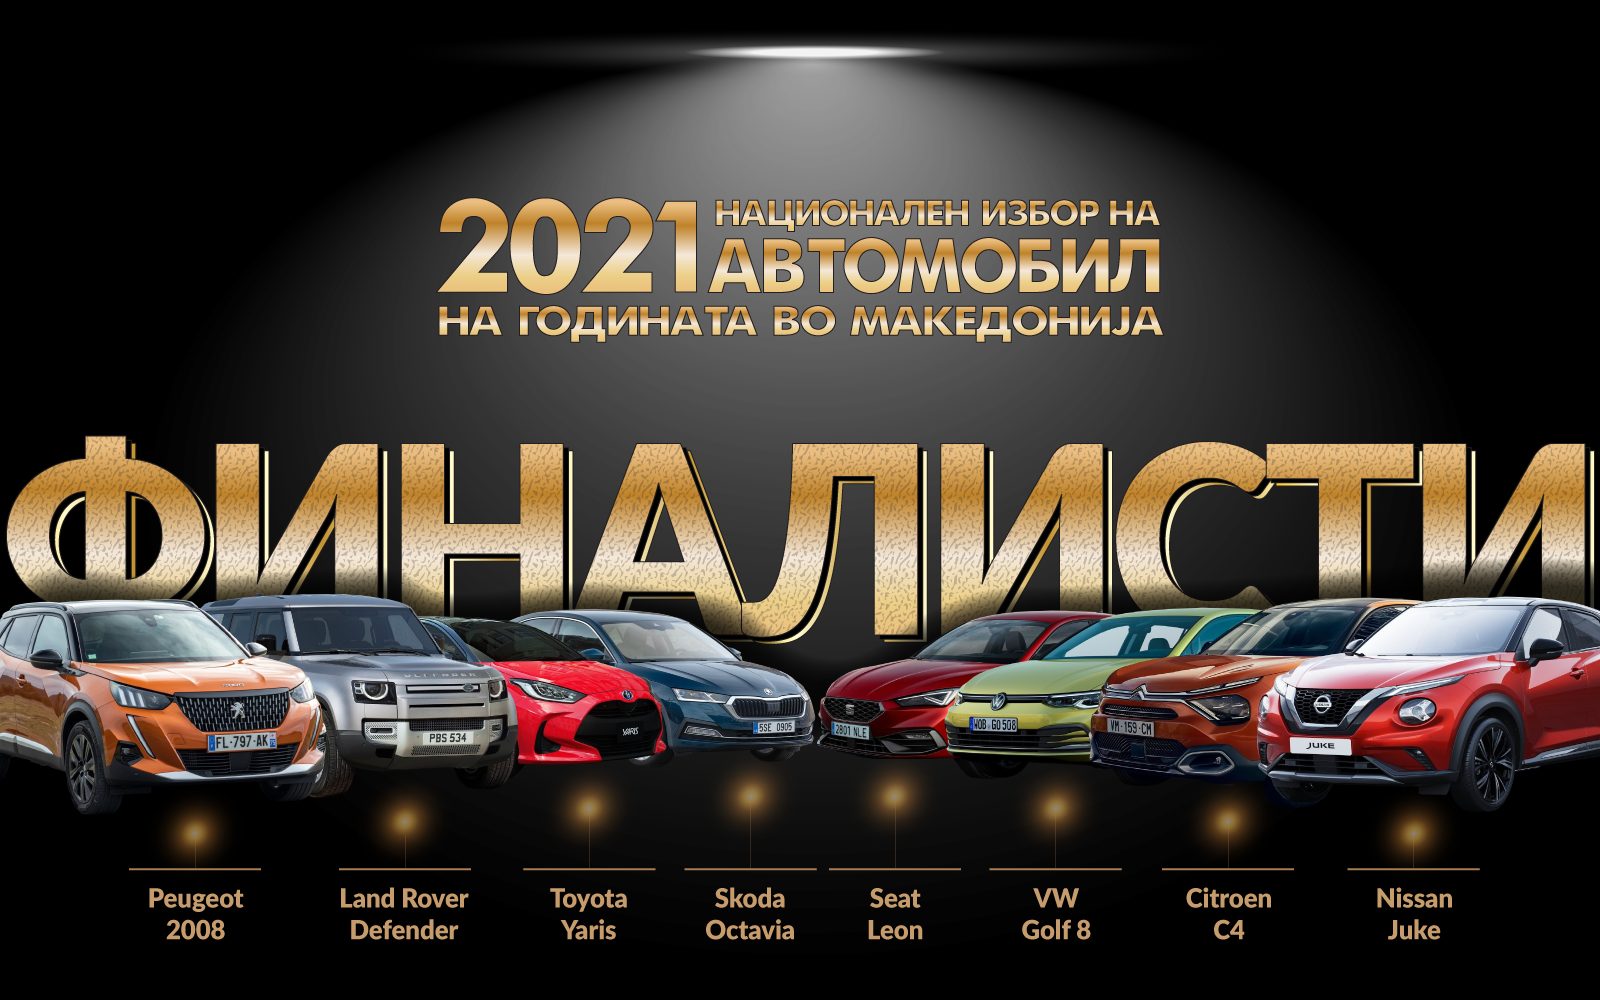 Одредени ФИНАЛИСТИТЕ на Националниот избор на Автомобил на годината во Македонија за 2021